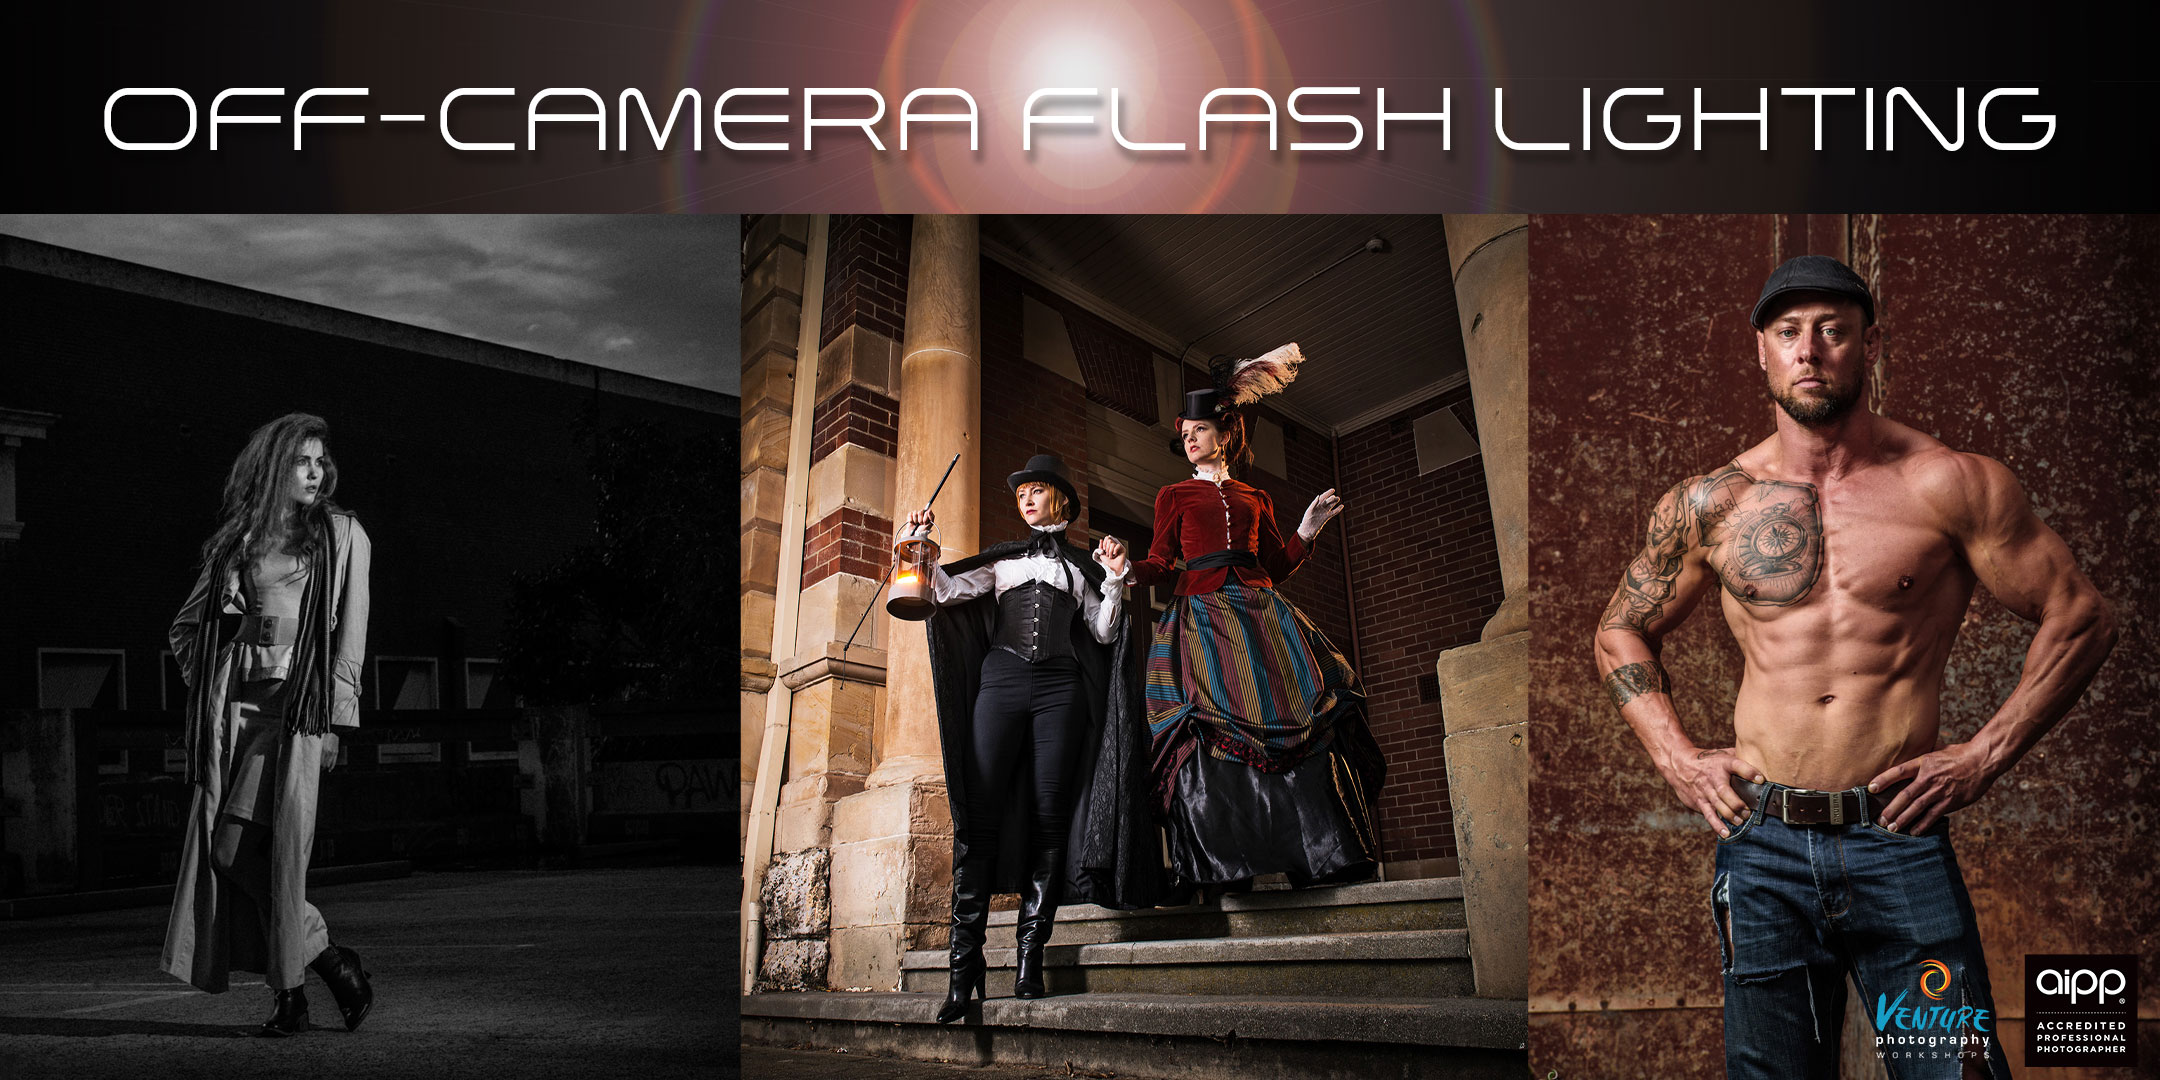 Off-camera flash lighting workshop